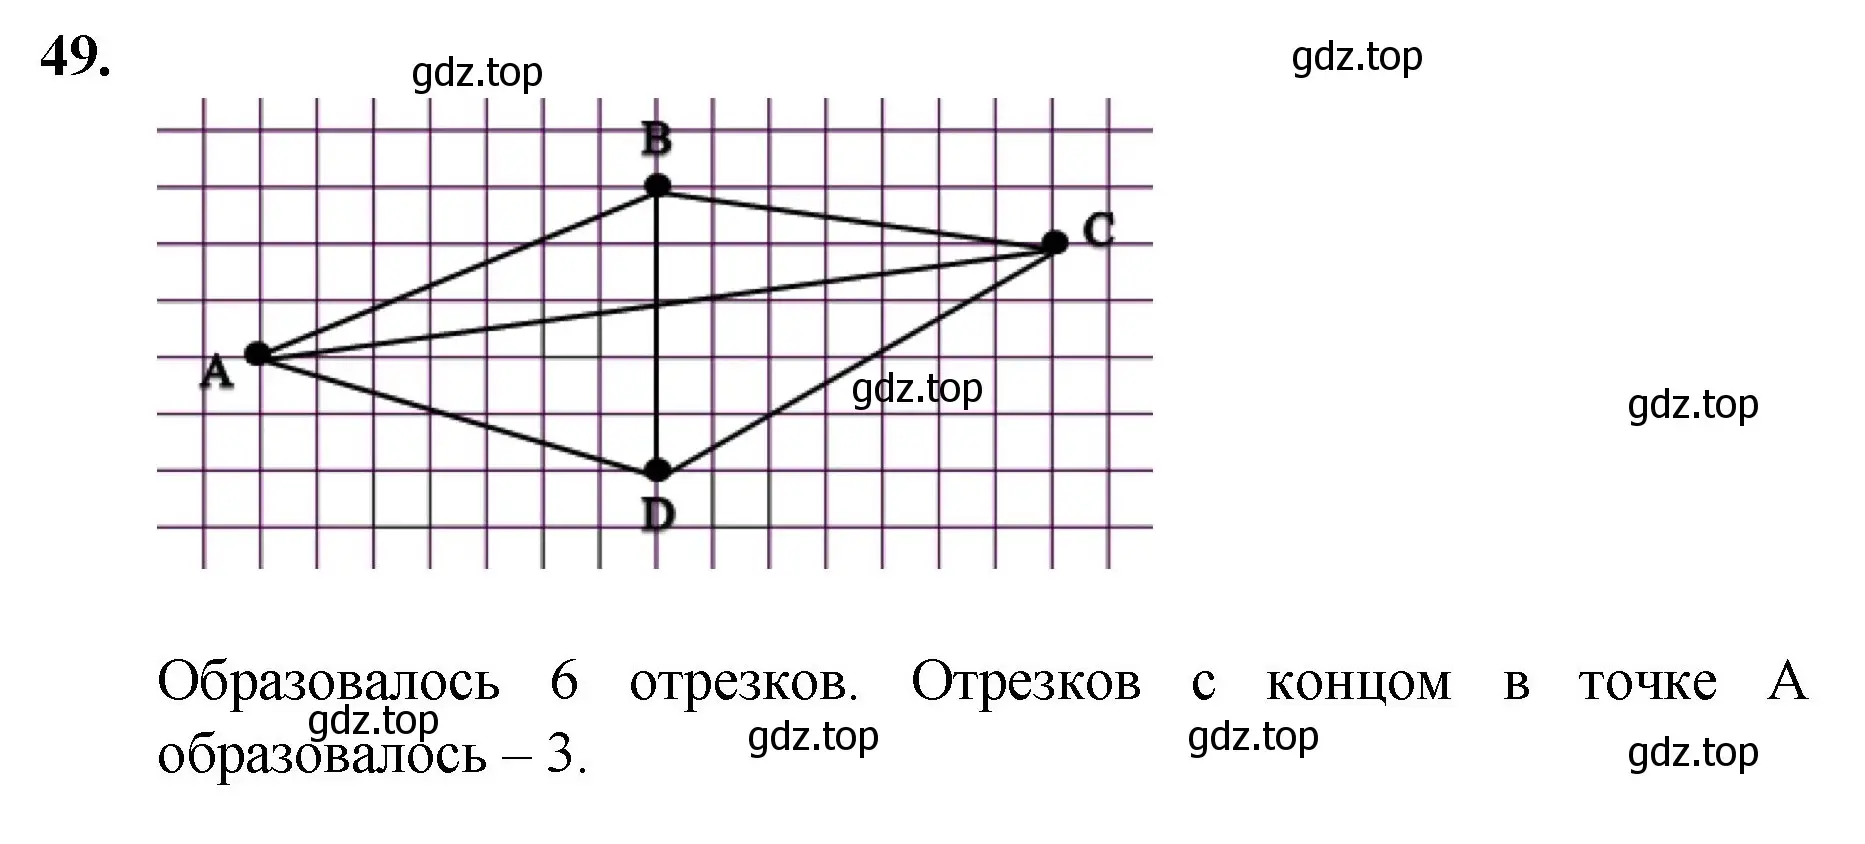 Решение номер 49 (страница 20) гдз по математике 5 класс Мерзляк, Полонский, учебник